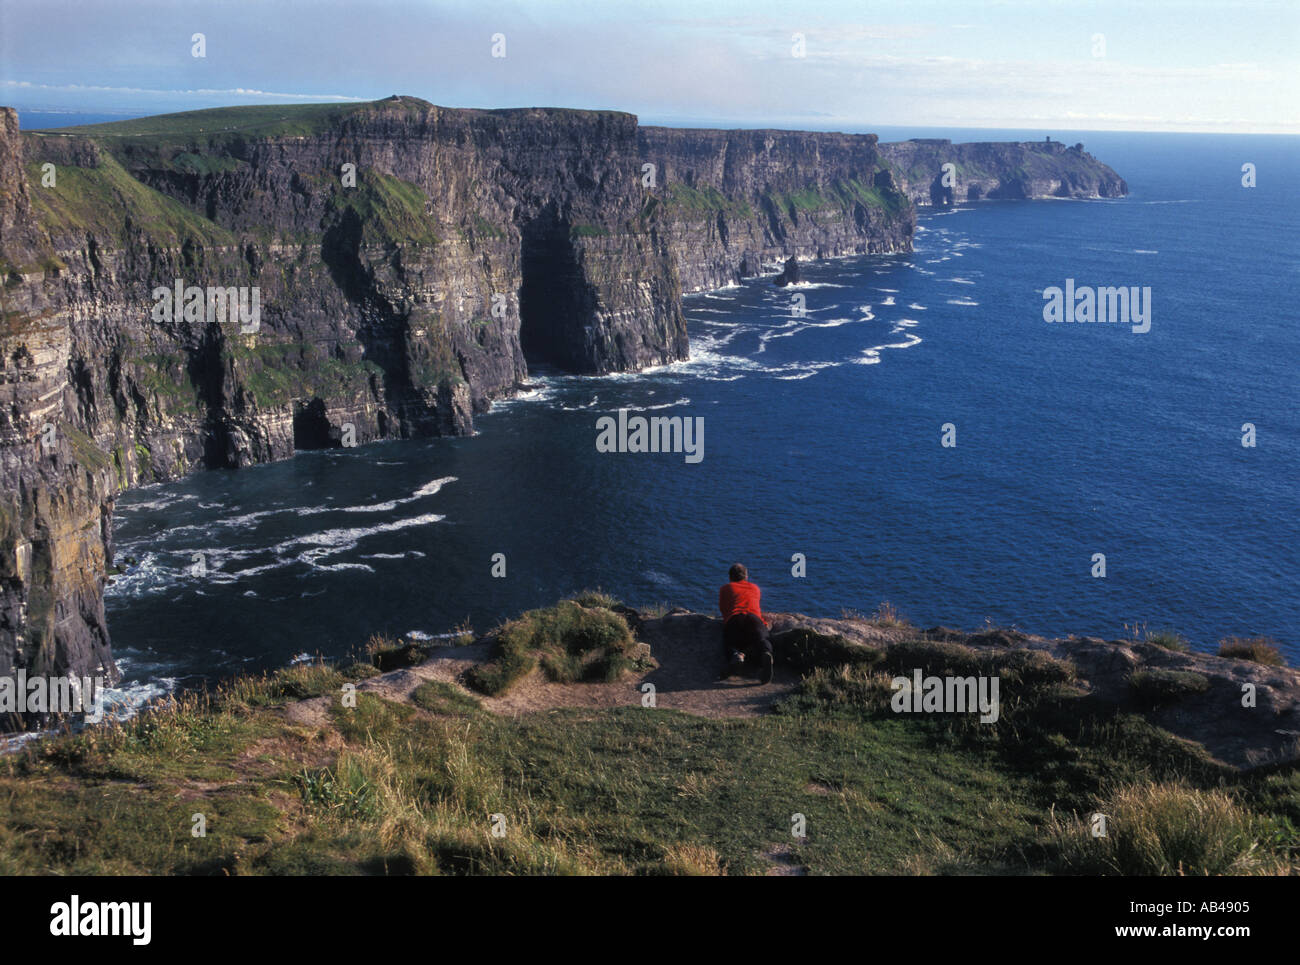 Klippen von Moher Irland Cliffs of Moher Ireland Stock Photo